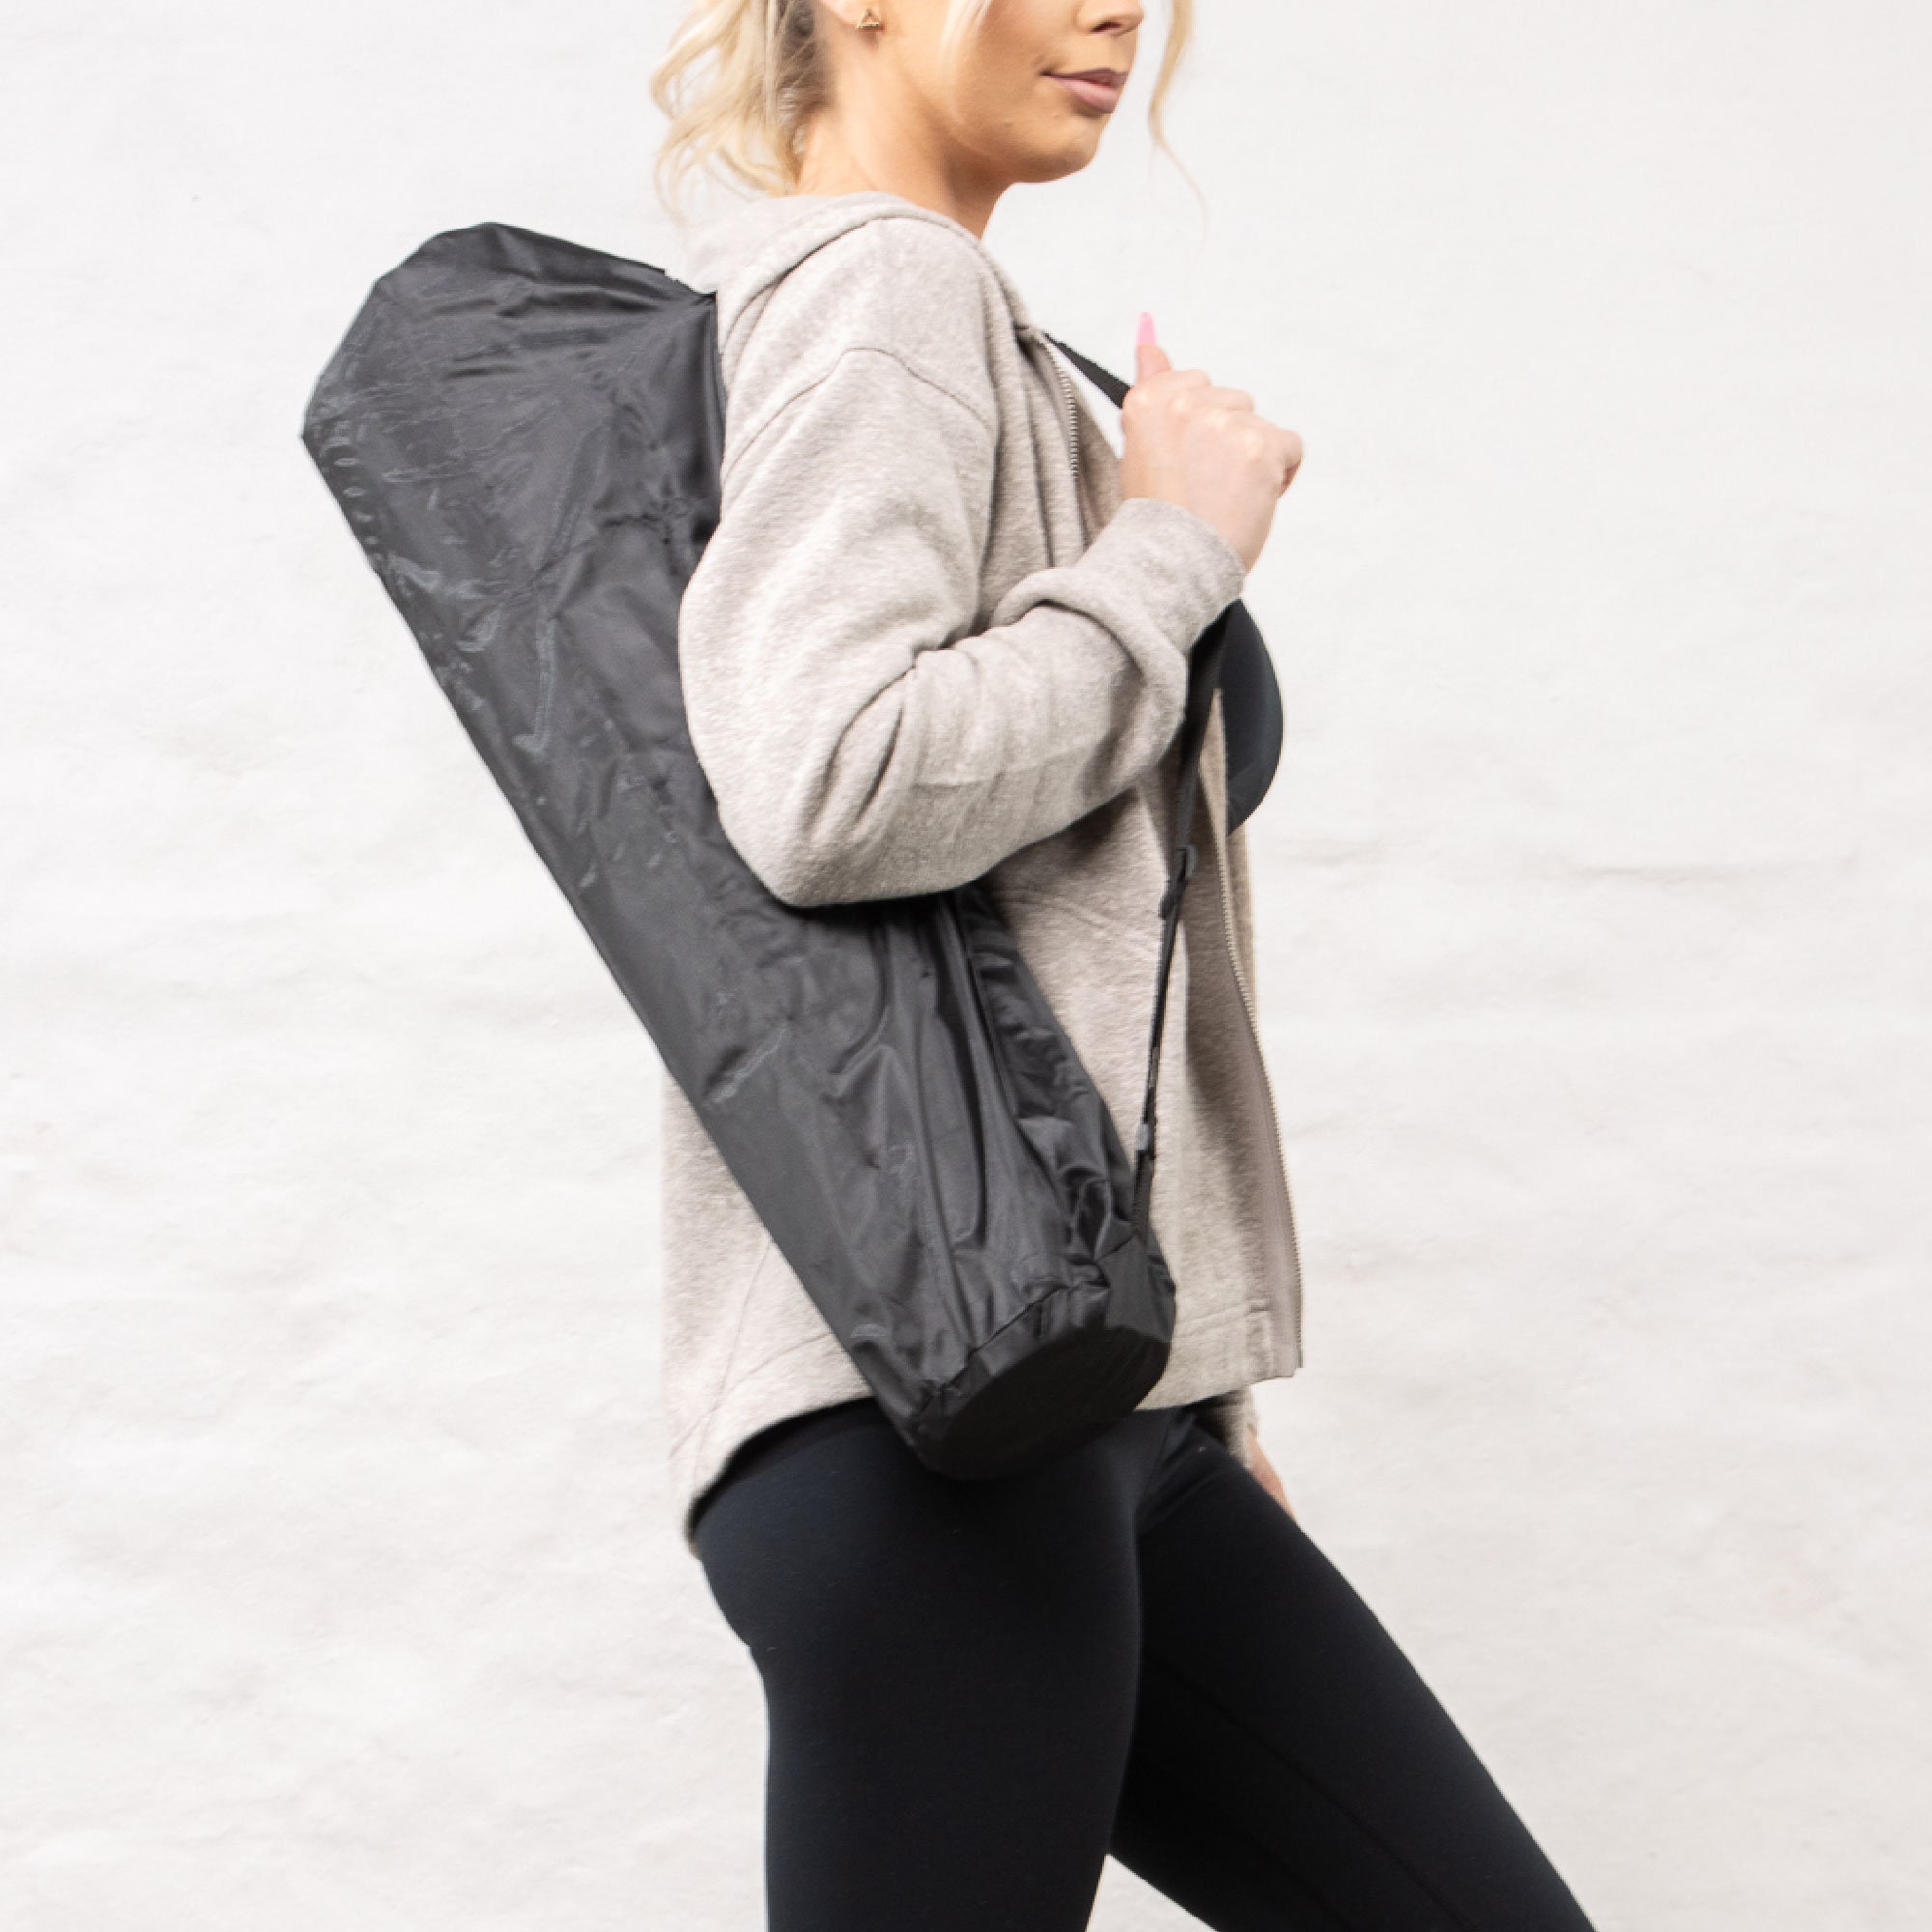 Yoga Mat Carry Bag 